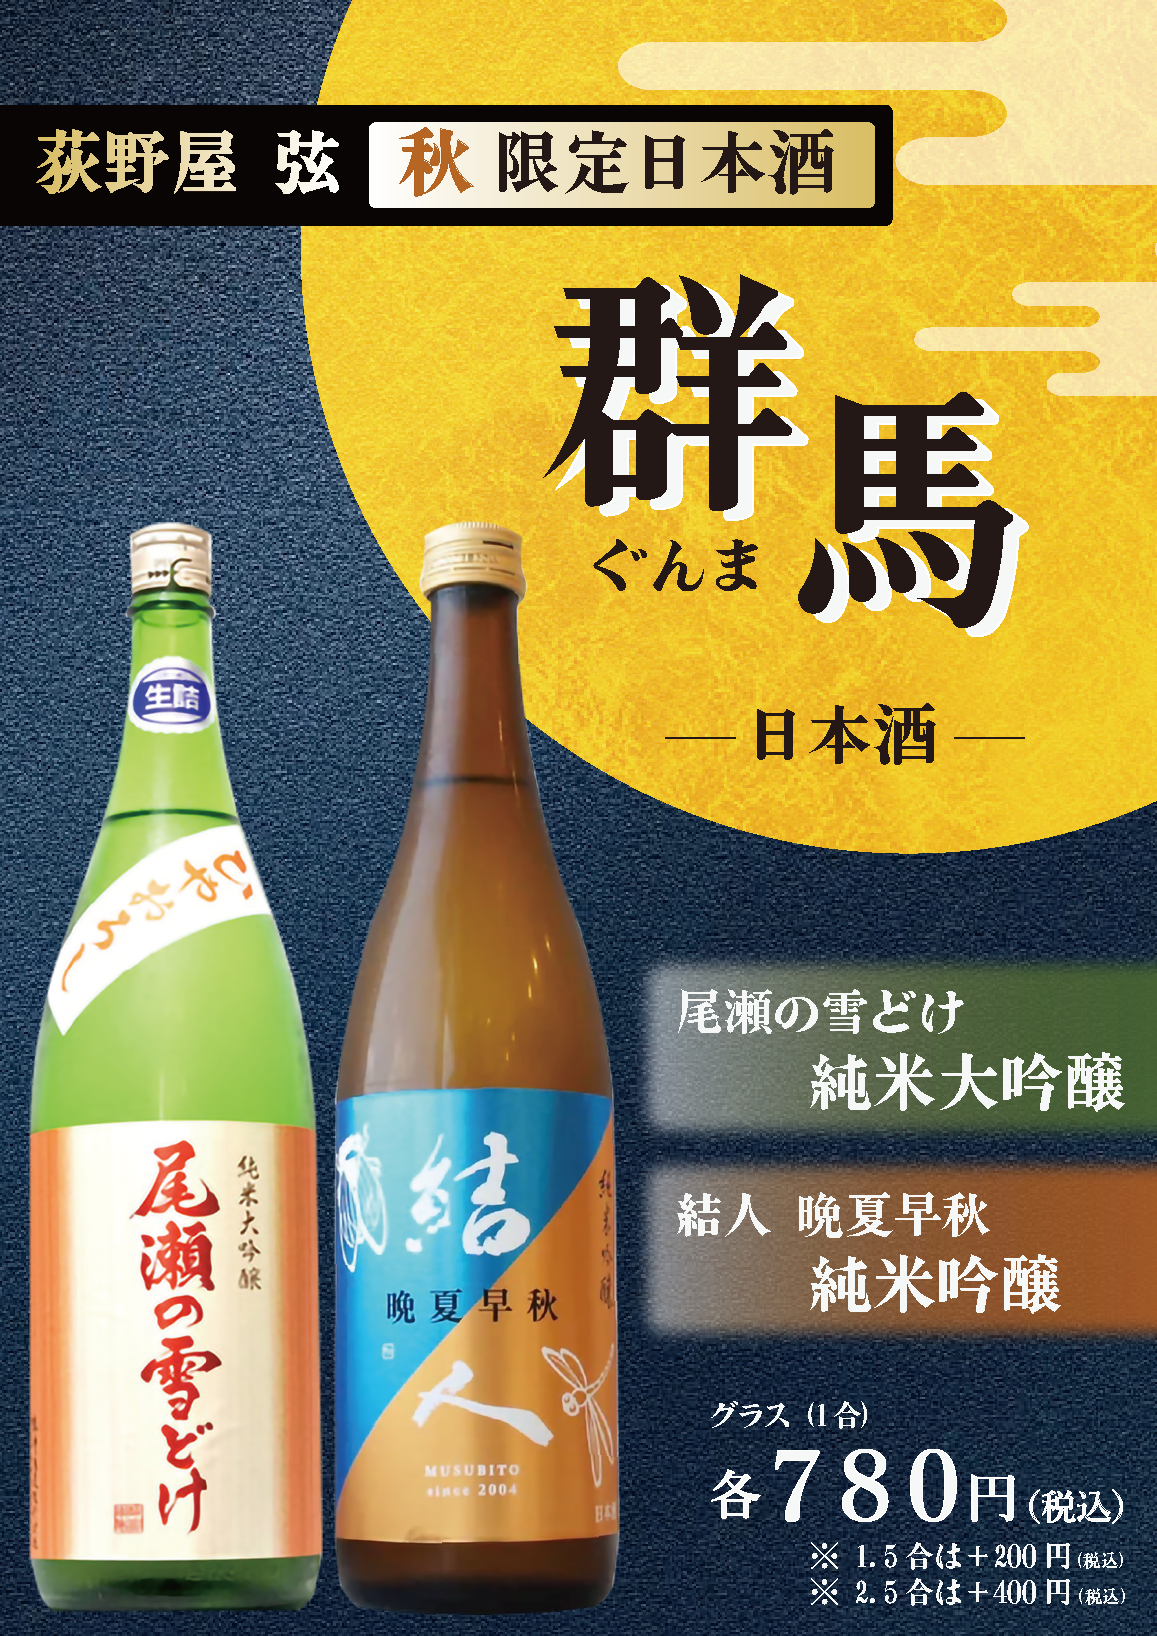 Autumn Sake